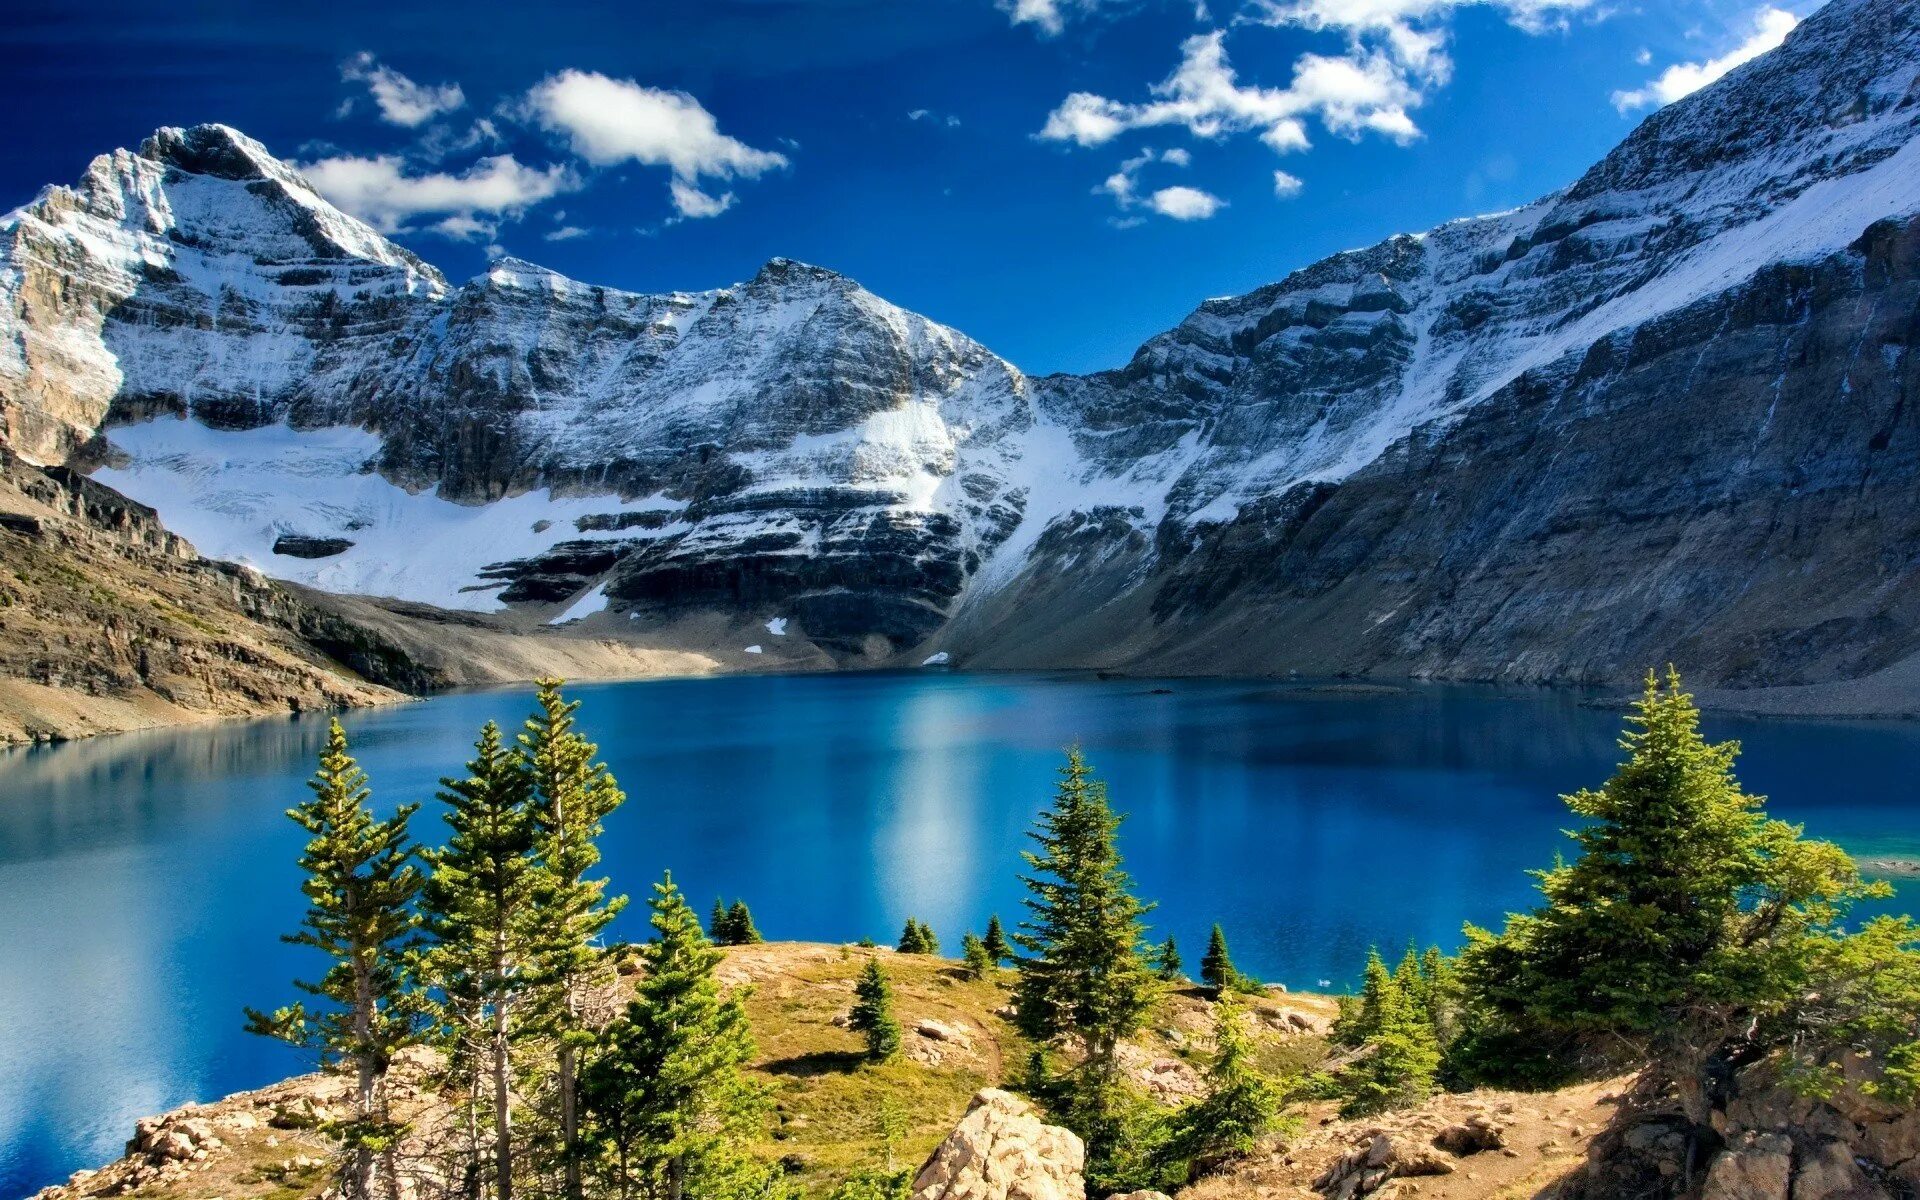 Картинки на заставку. Озеро Морейн в Канаде. Национальный парк Йохо Канада. Озеро Онтарио горы. Заповедник Банф Канада.